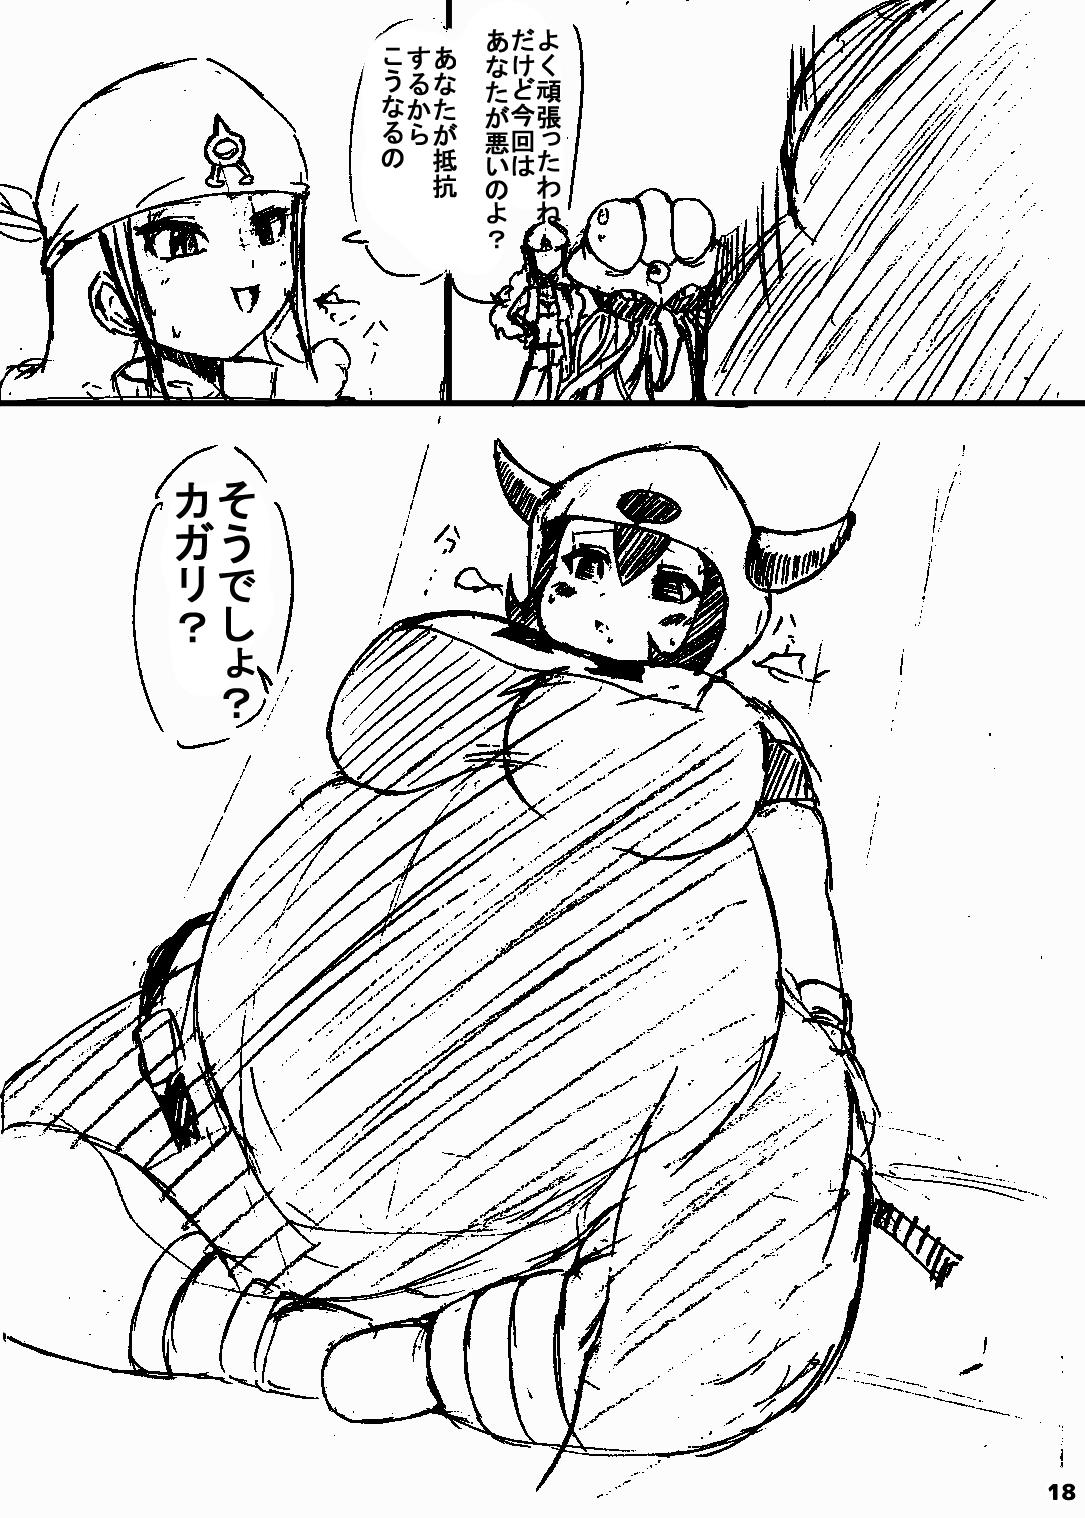 ポケスペカガリ肥満化漫画 16